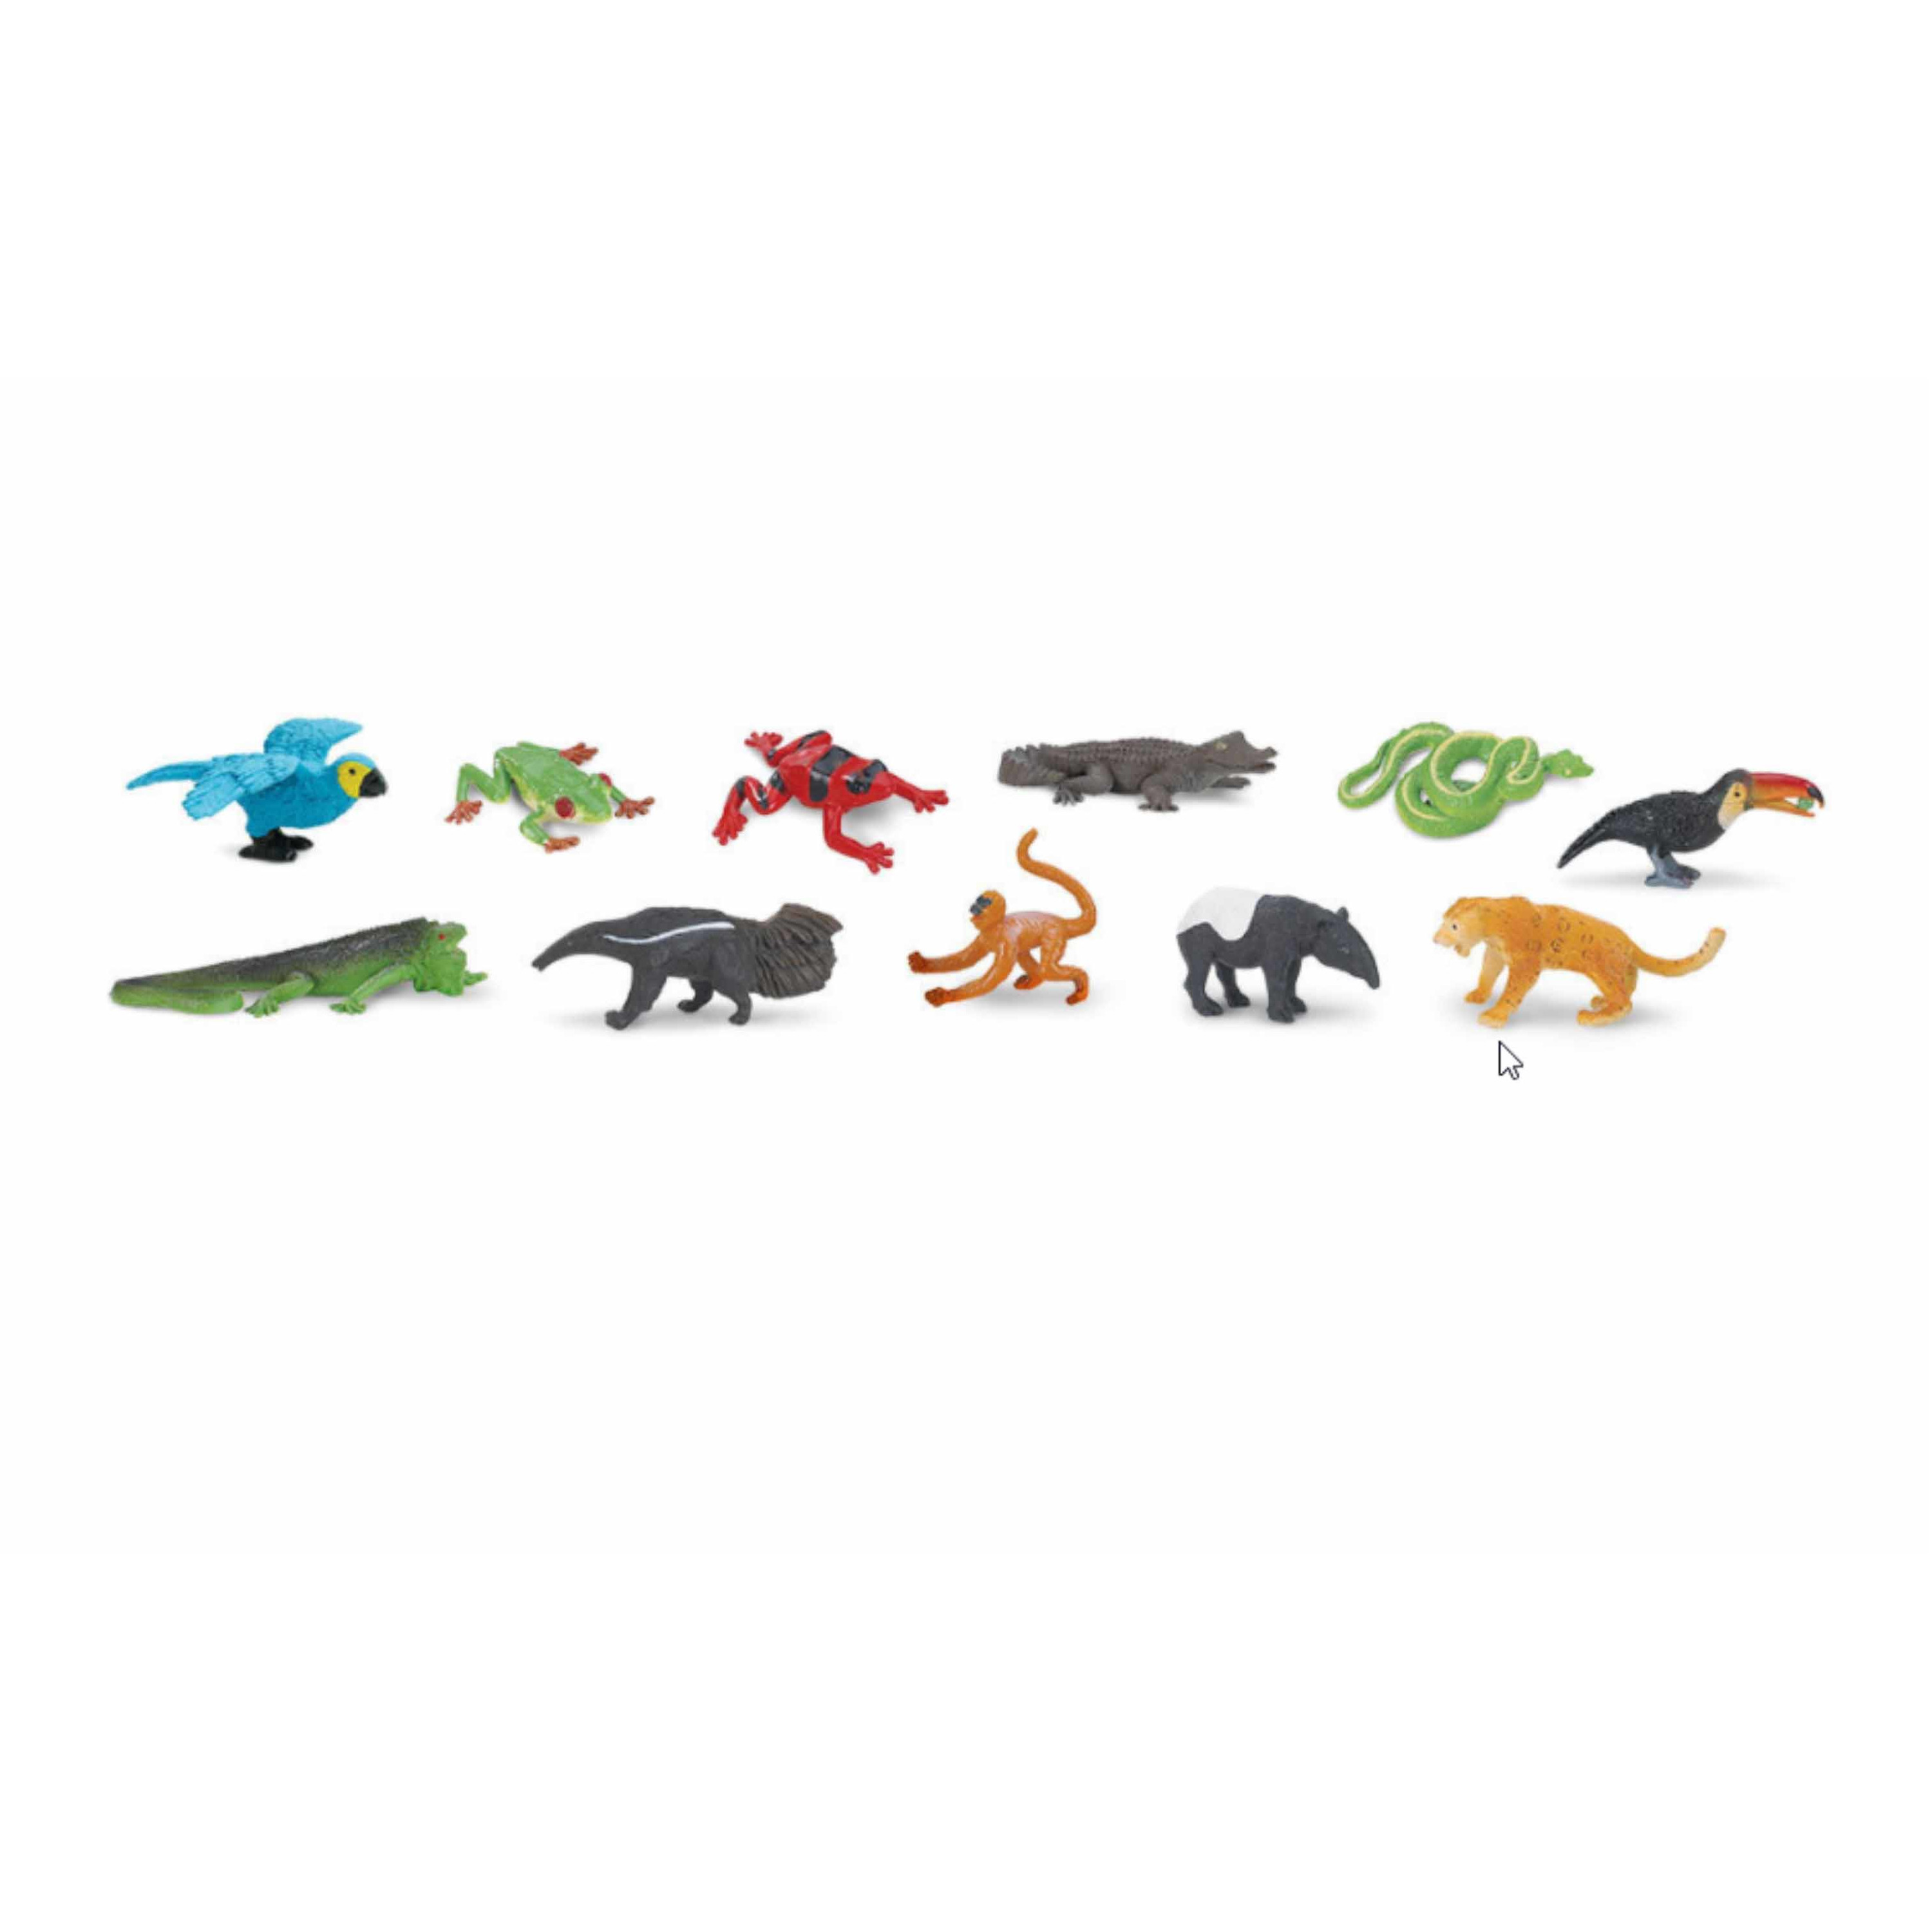 Plastic speelgoed dieren figuren oerwoud wilde dieren 11 stuks